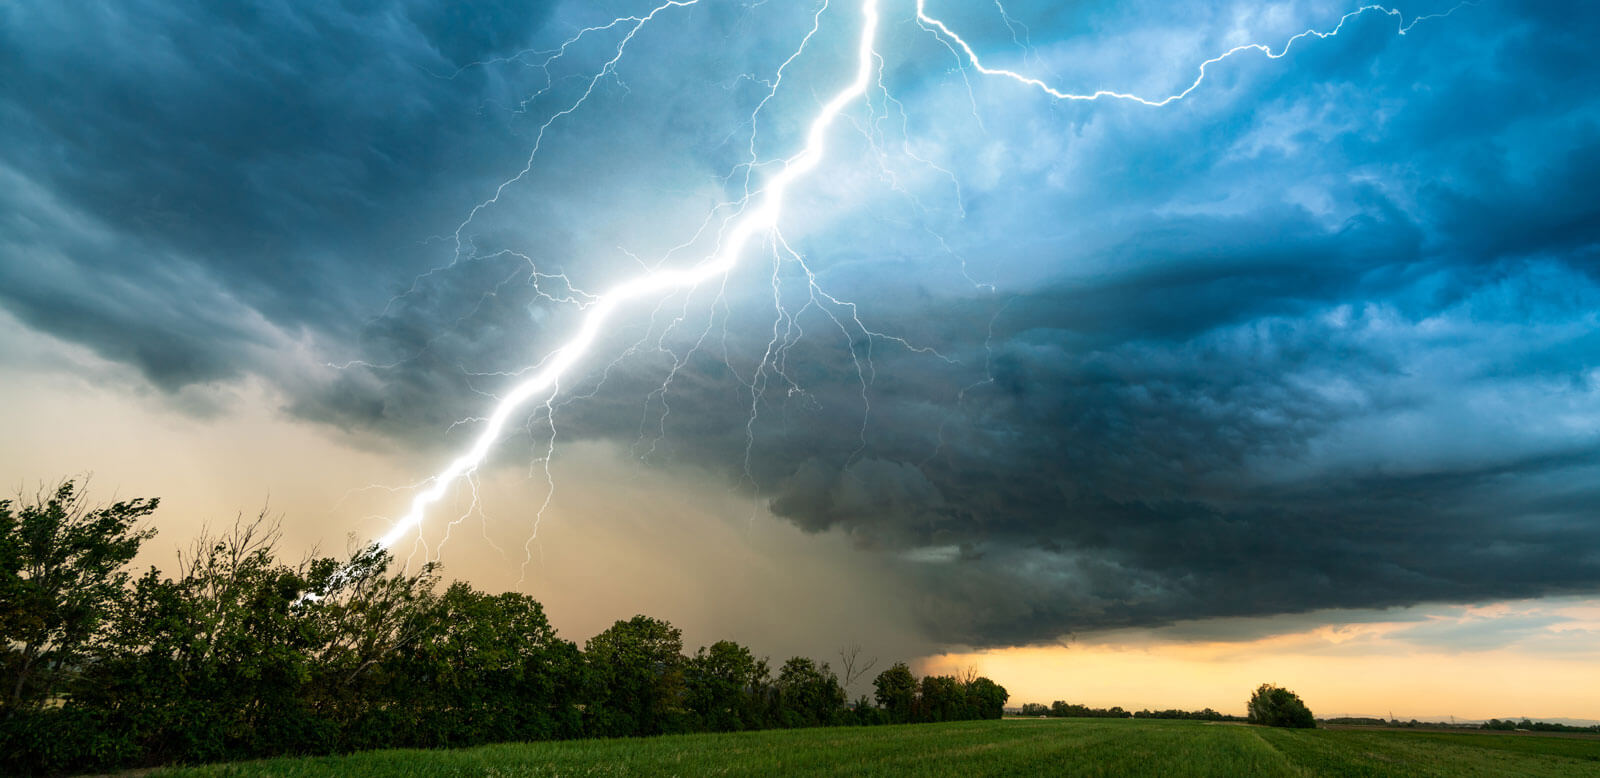 lightning strike near a field